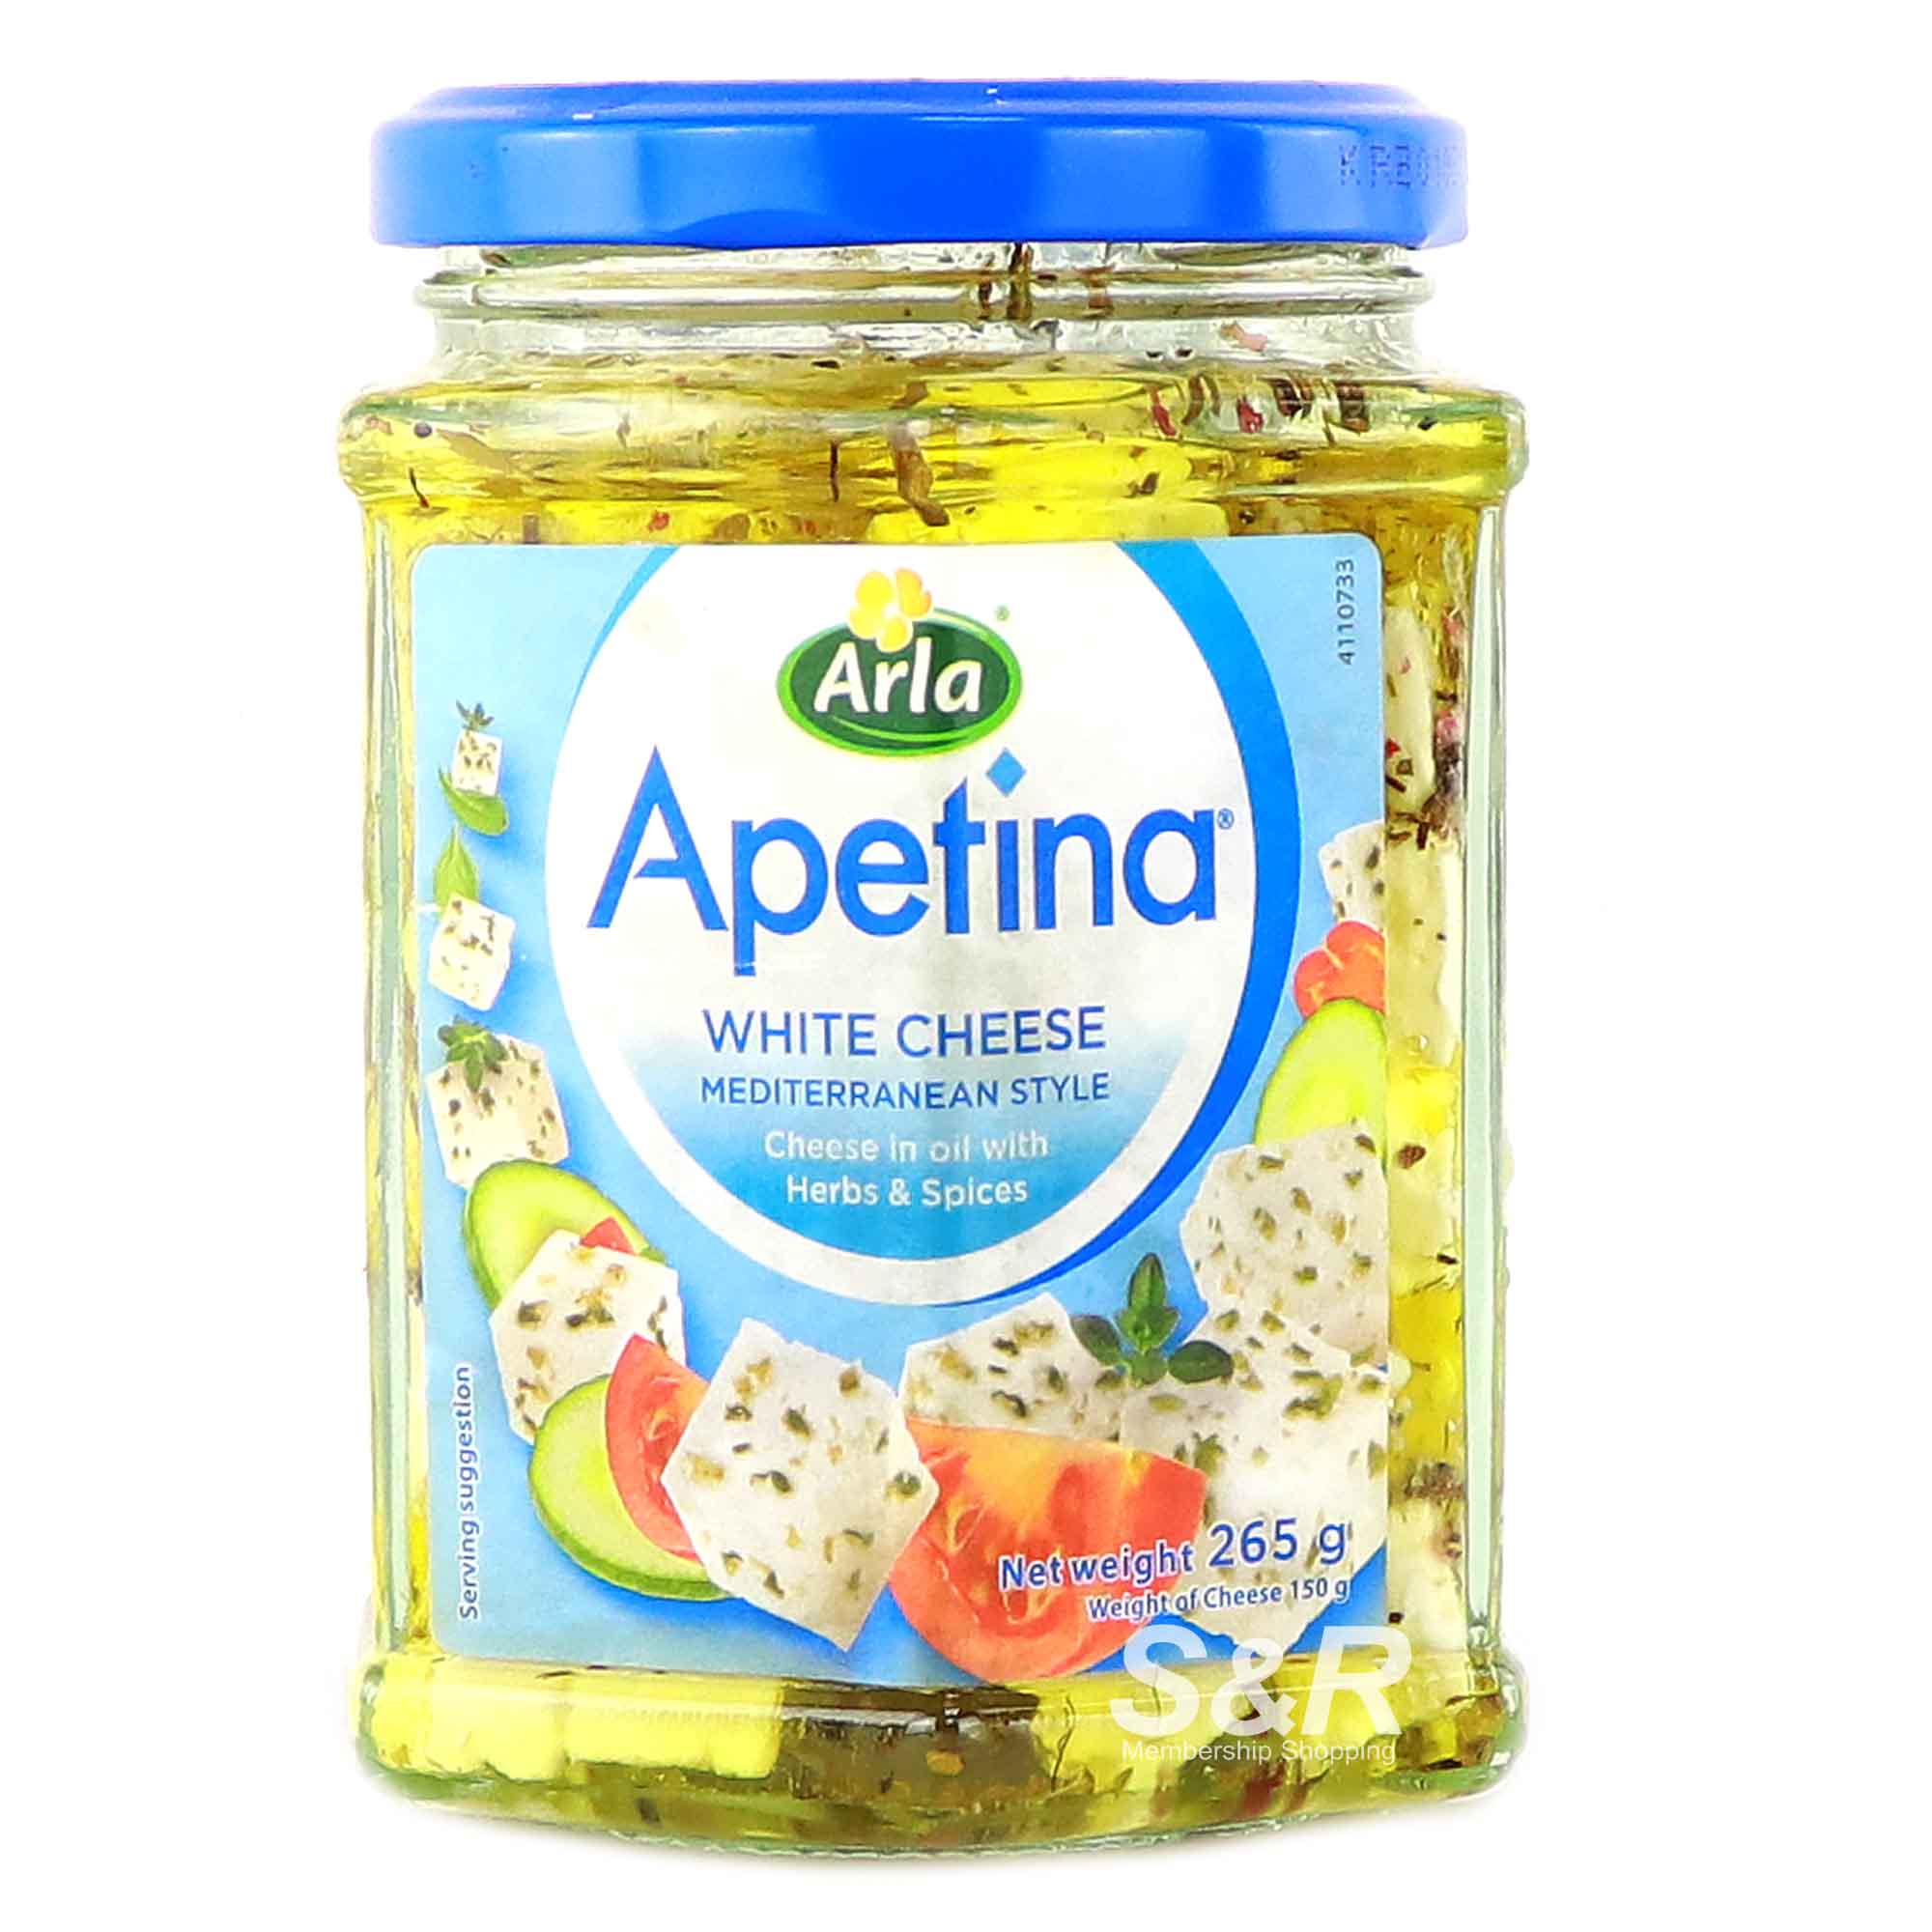 Arla Apetina White Cheese Mediterranean Style 265g